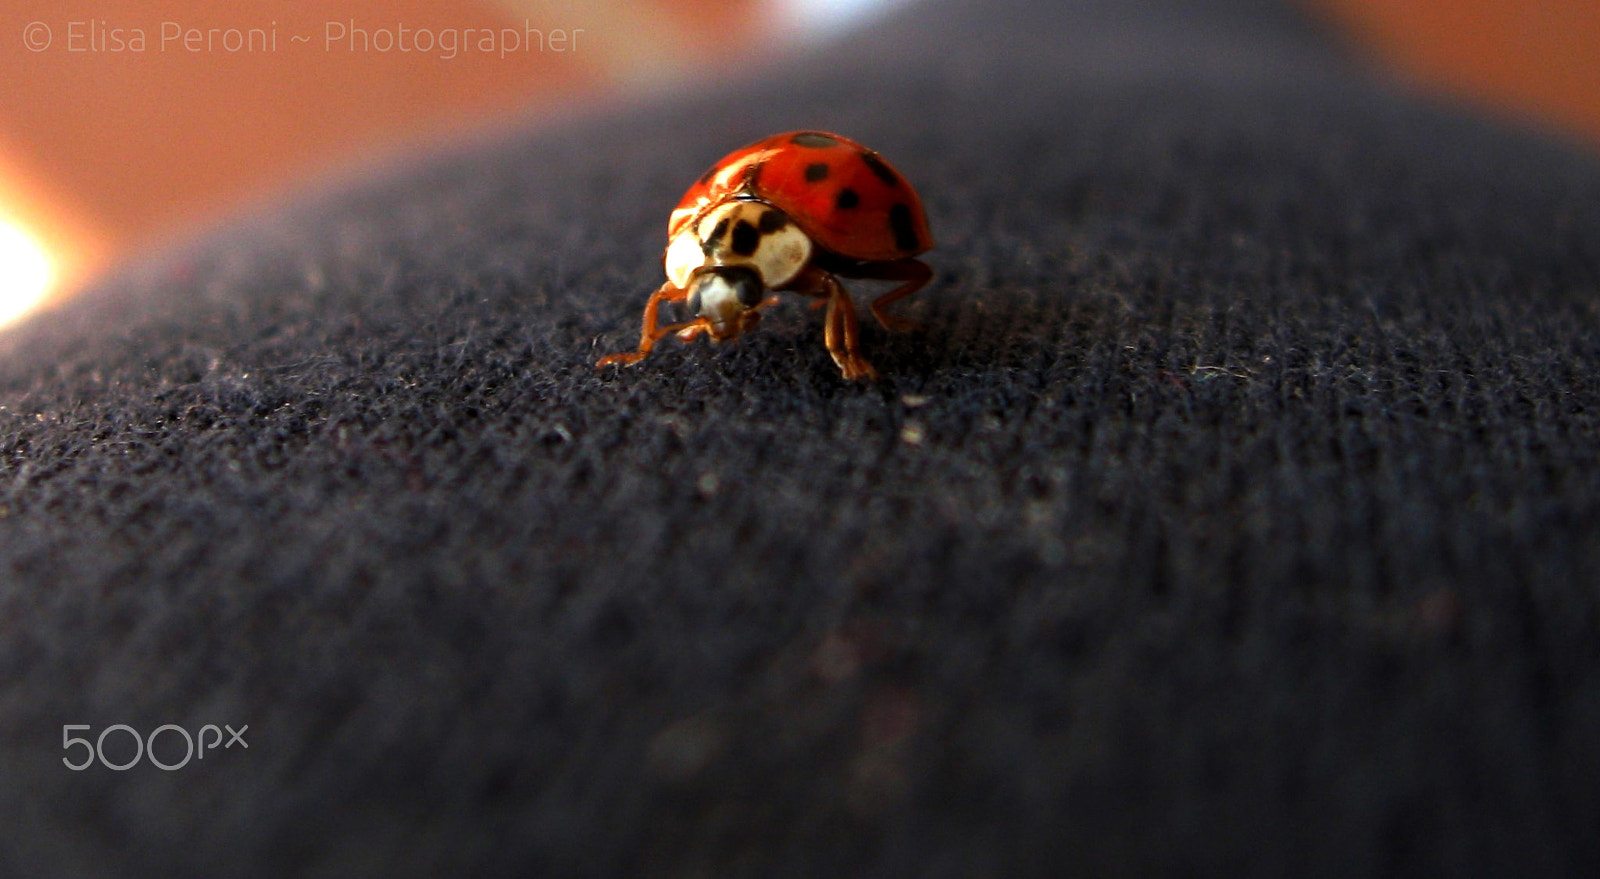 Canon PowerShot A580 sample photo. Ladybug photography